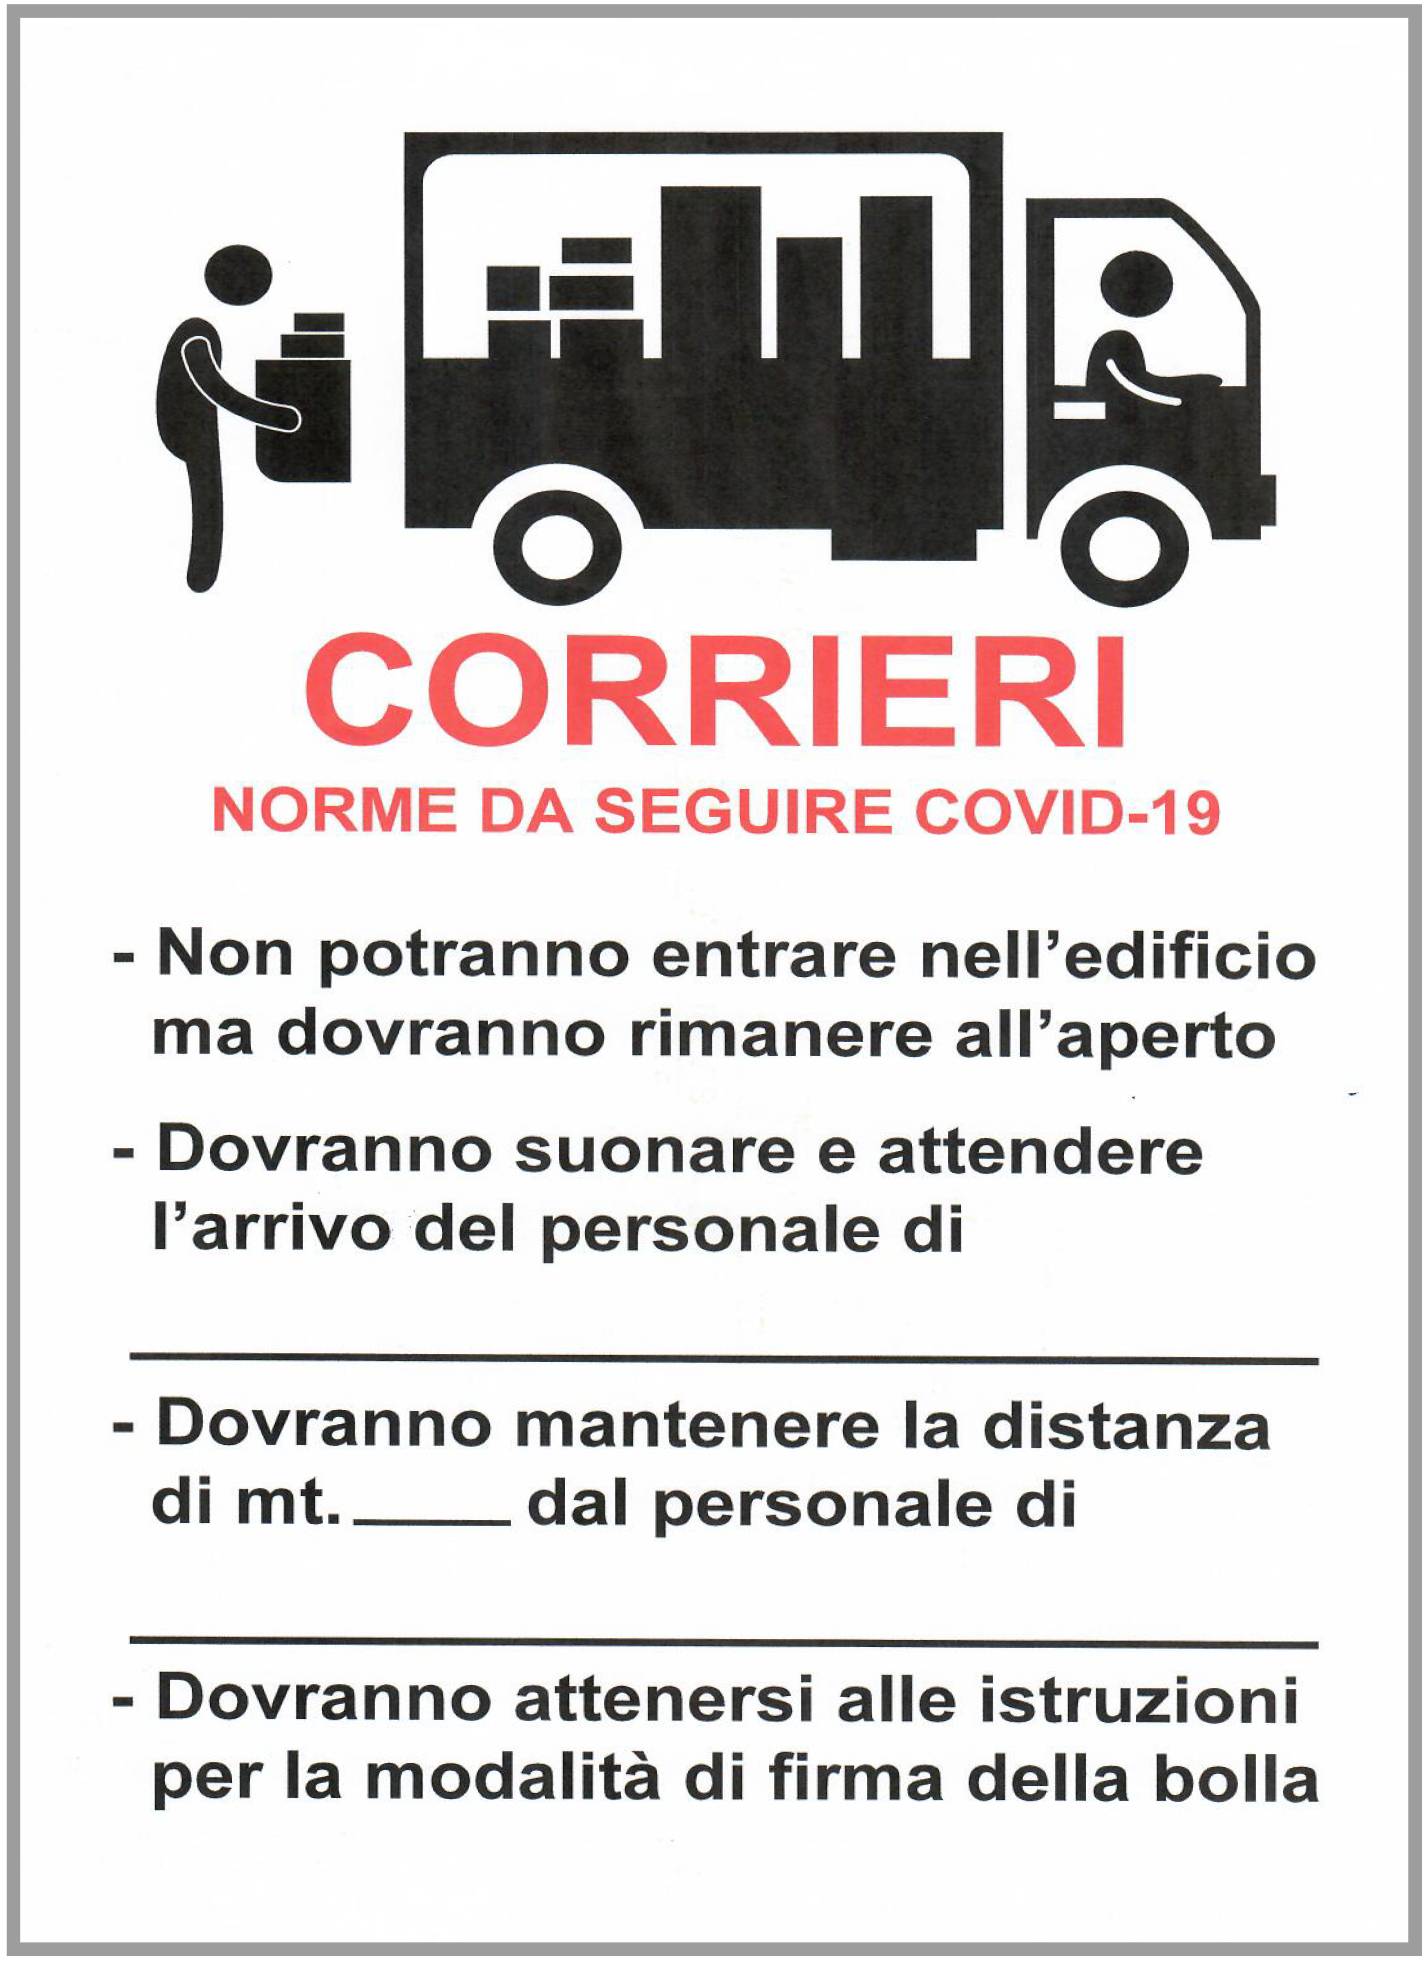 CARTELLO NORME CORRIERI COVID-19